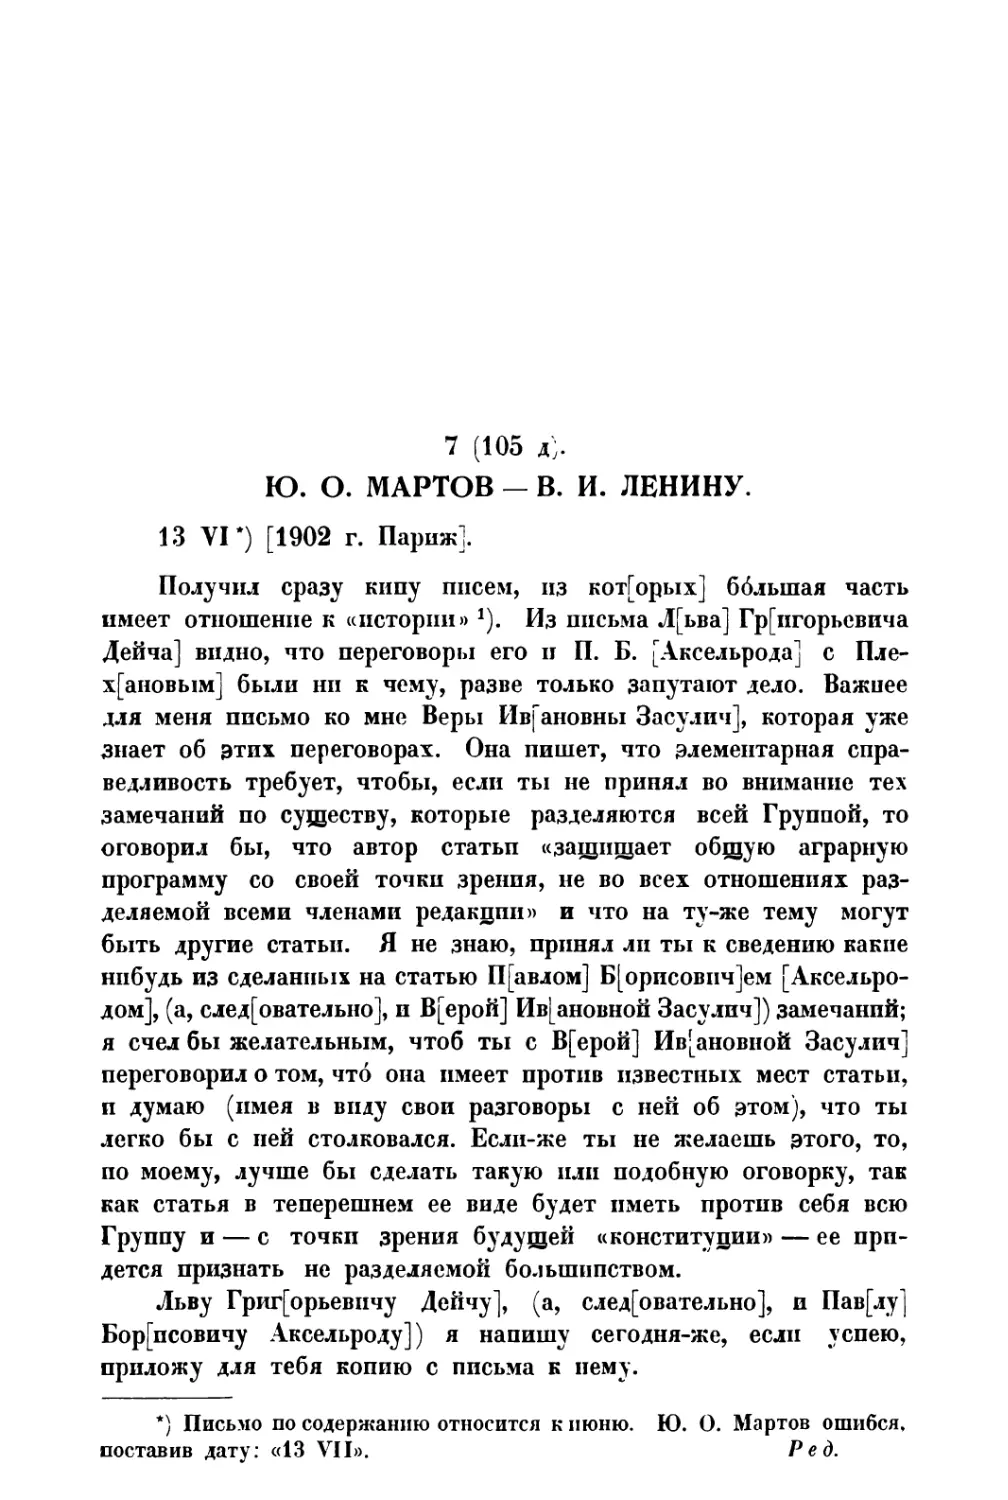 7. Ю. О. Мартов — В. И. Ленину от 13 VI 1902 г